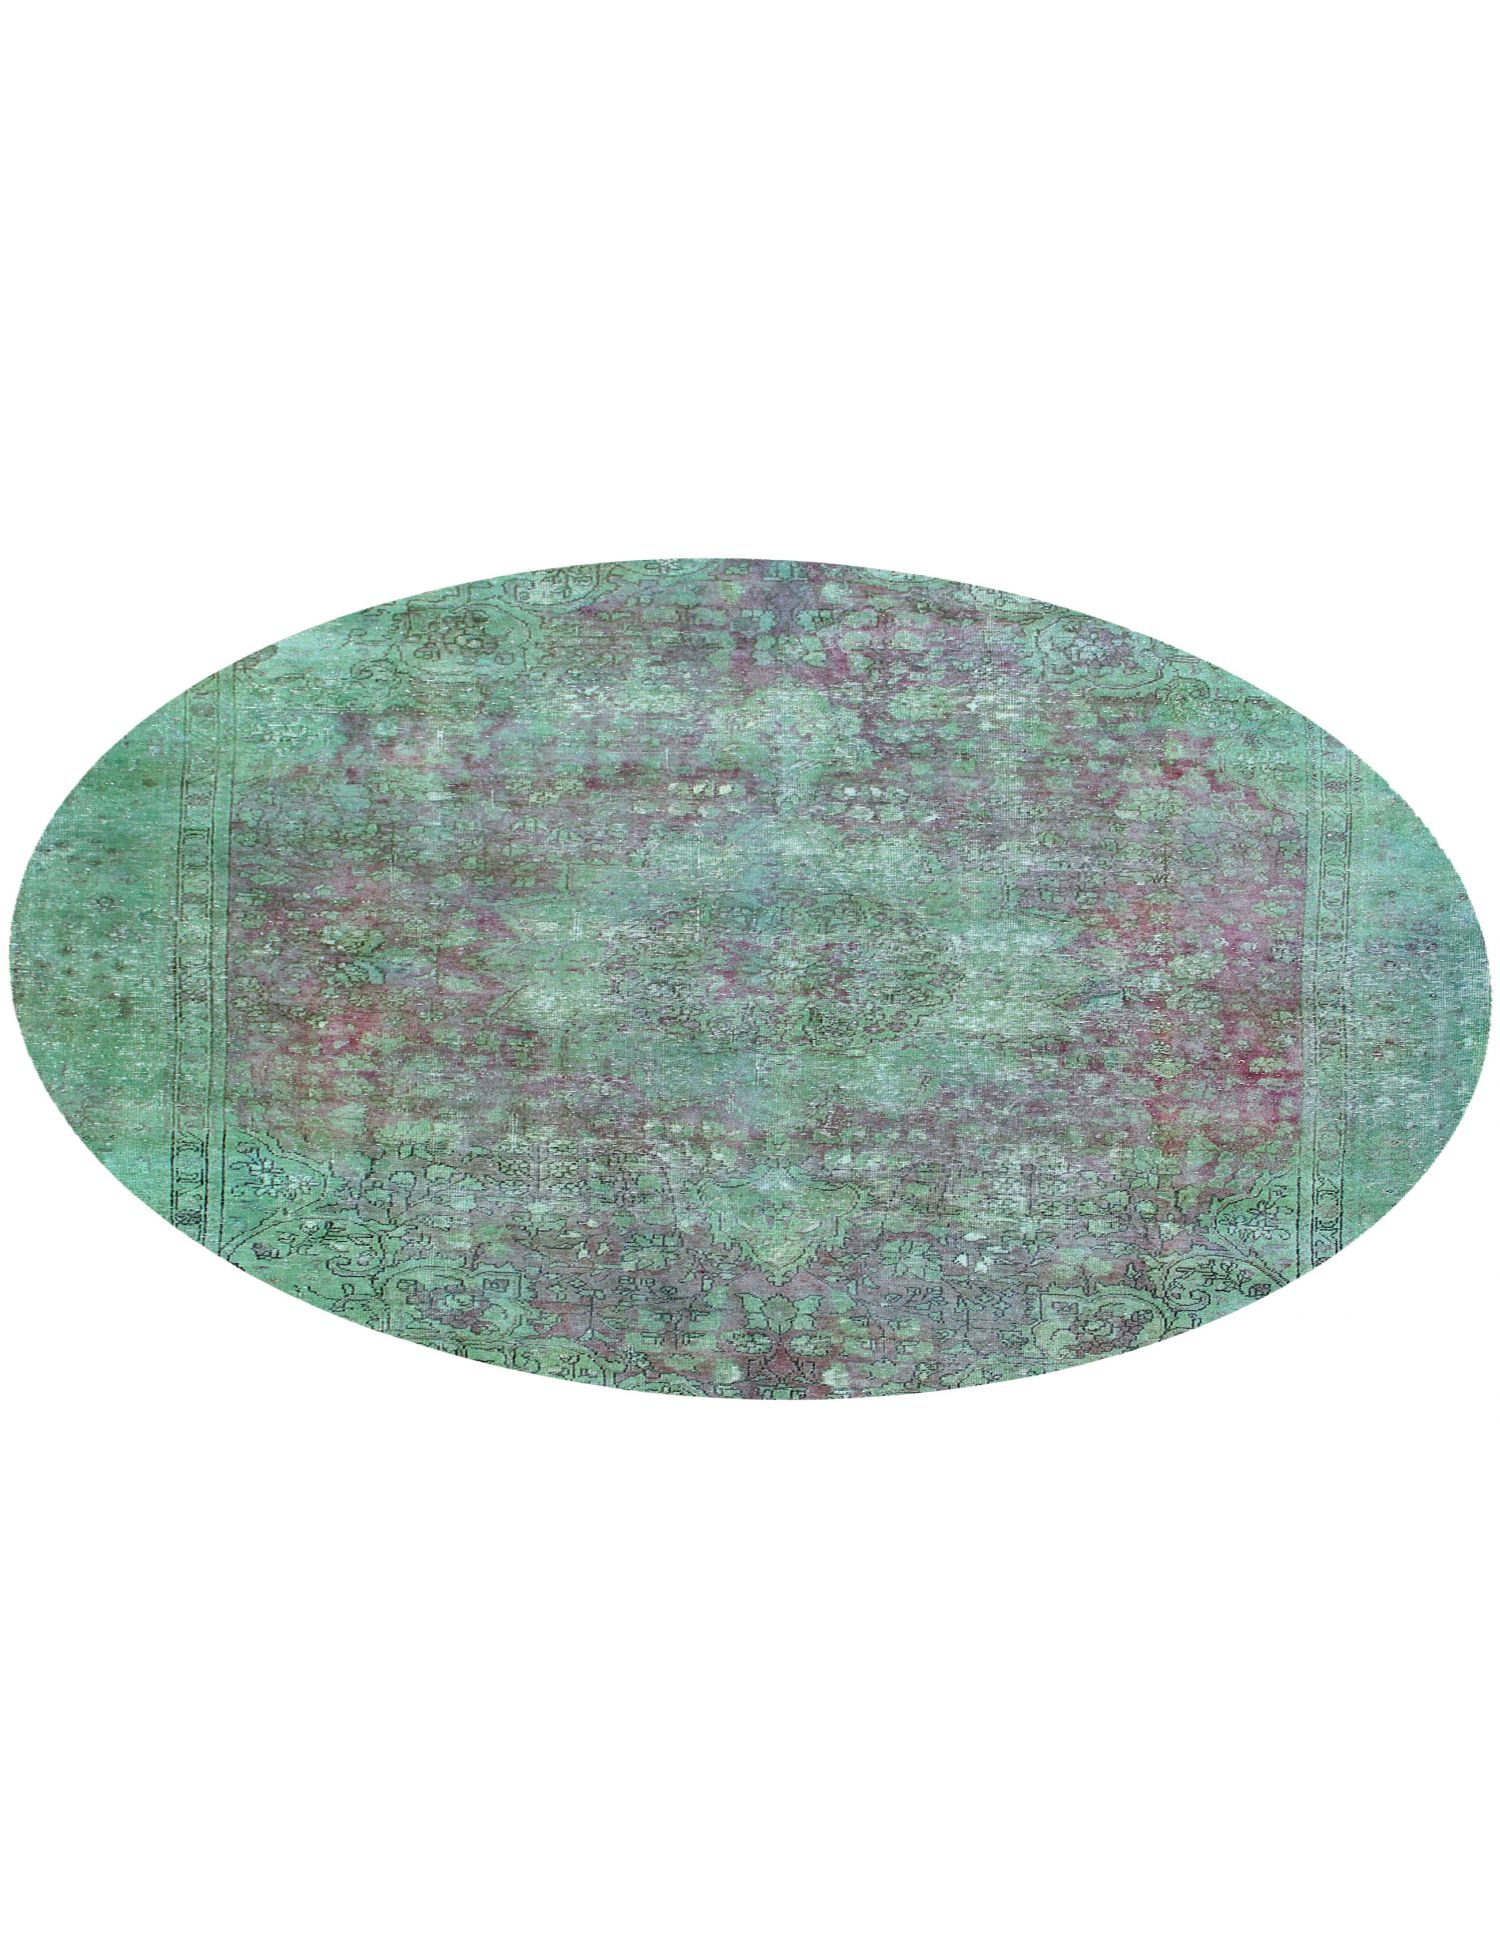 Rund  Vintage Teppich  grün <br/>230 x 230 cm